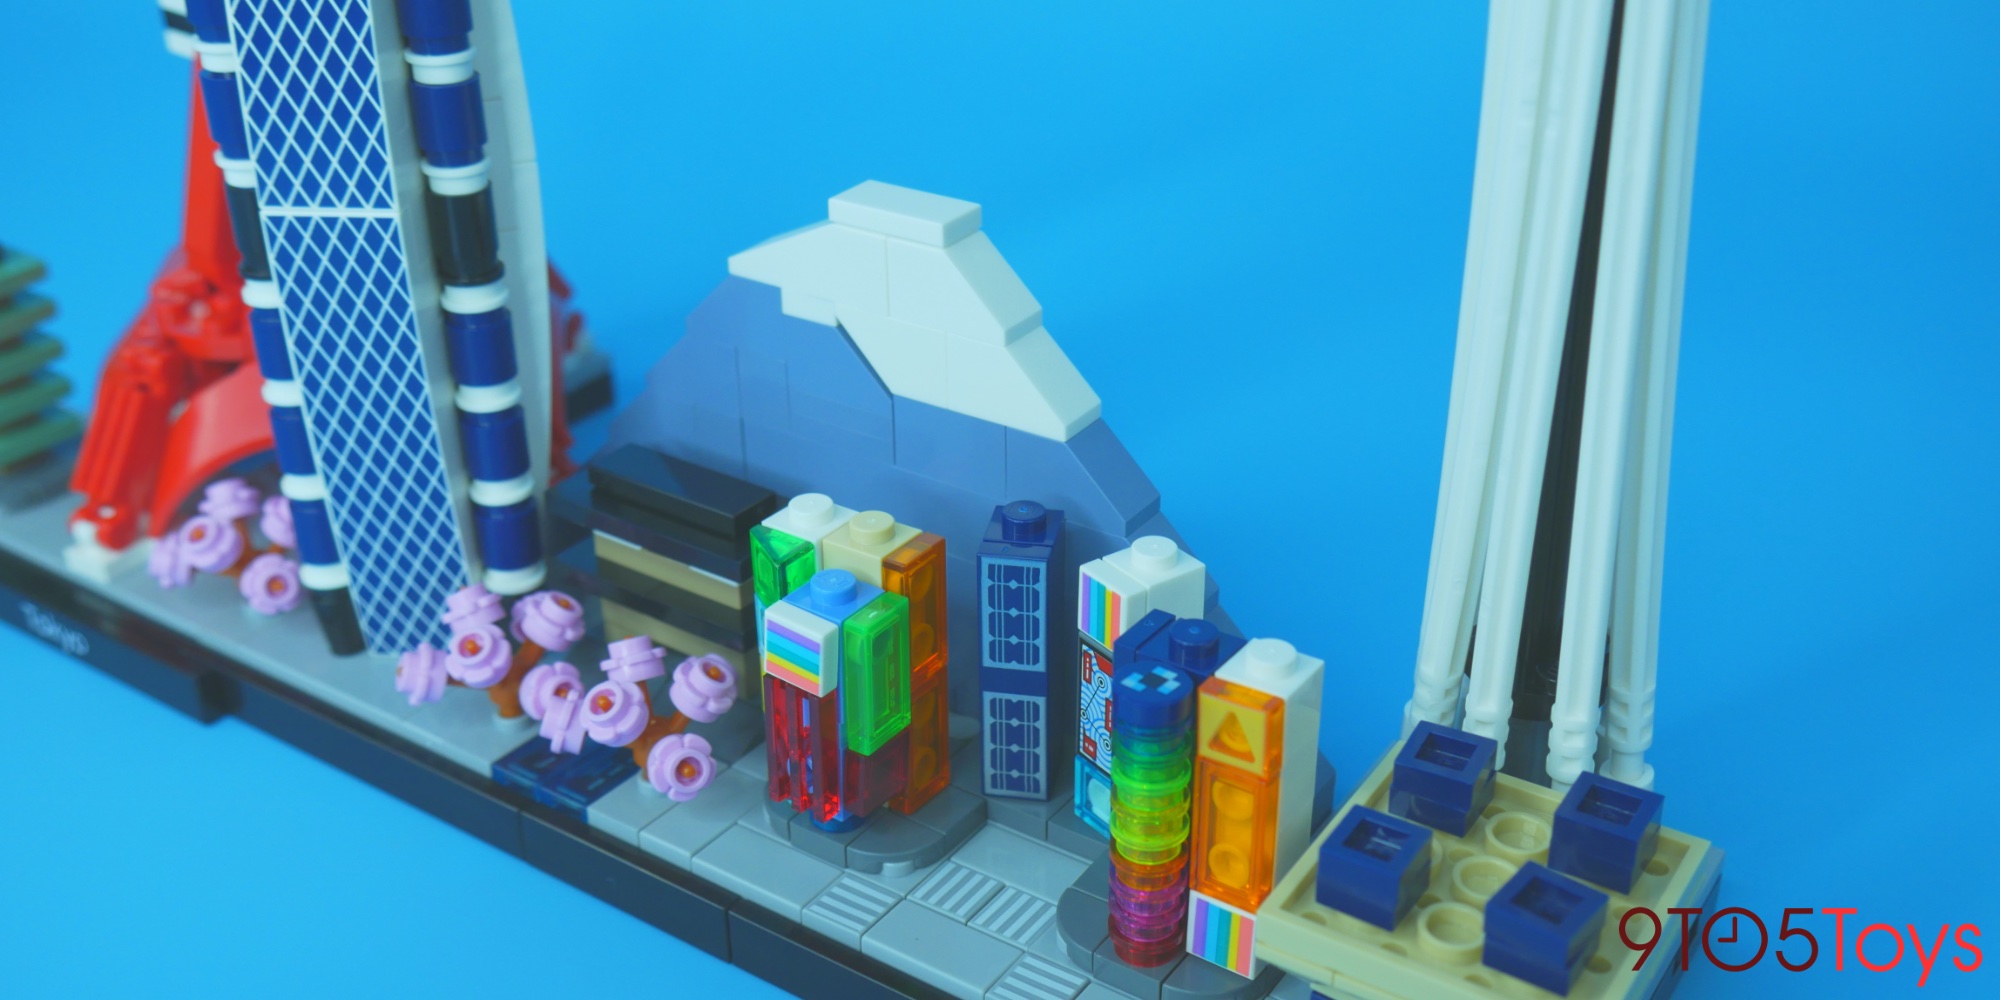 LEGO Tokyo Skyline review: striking Architecture kit 9to5Toys